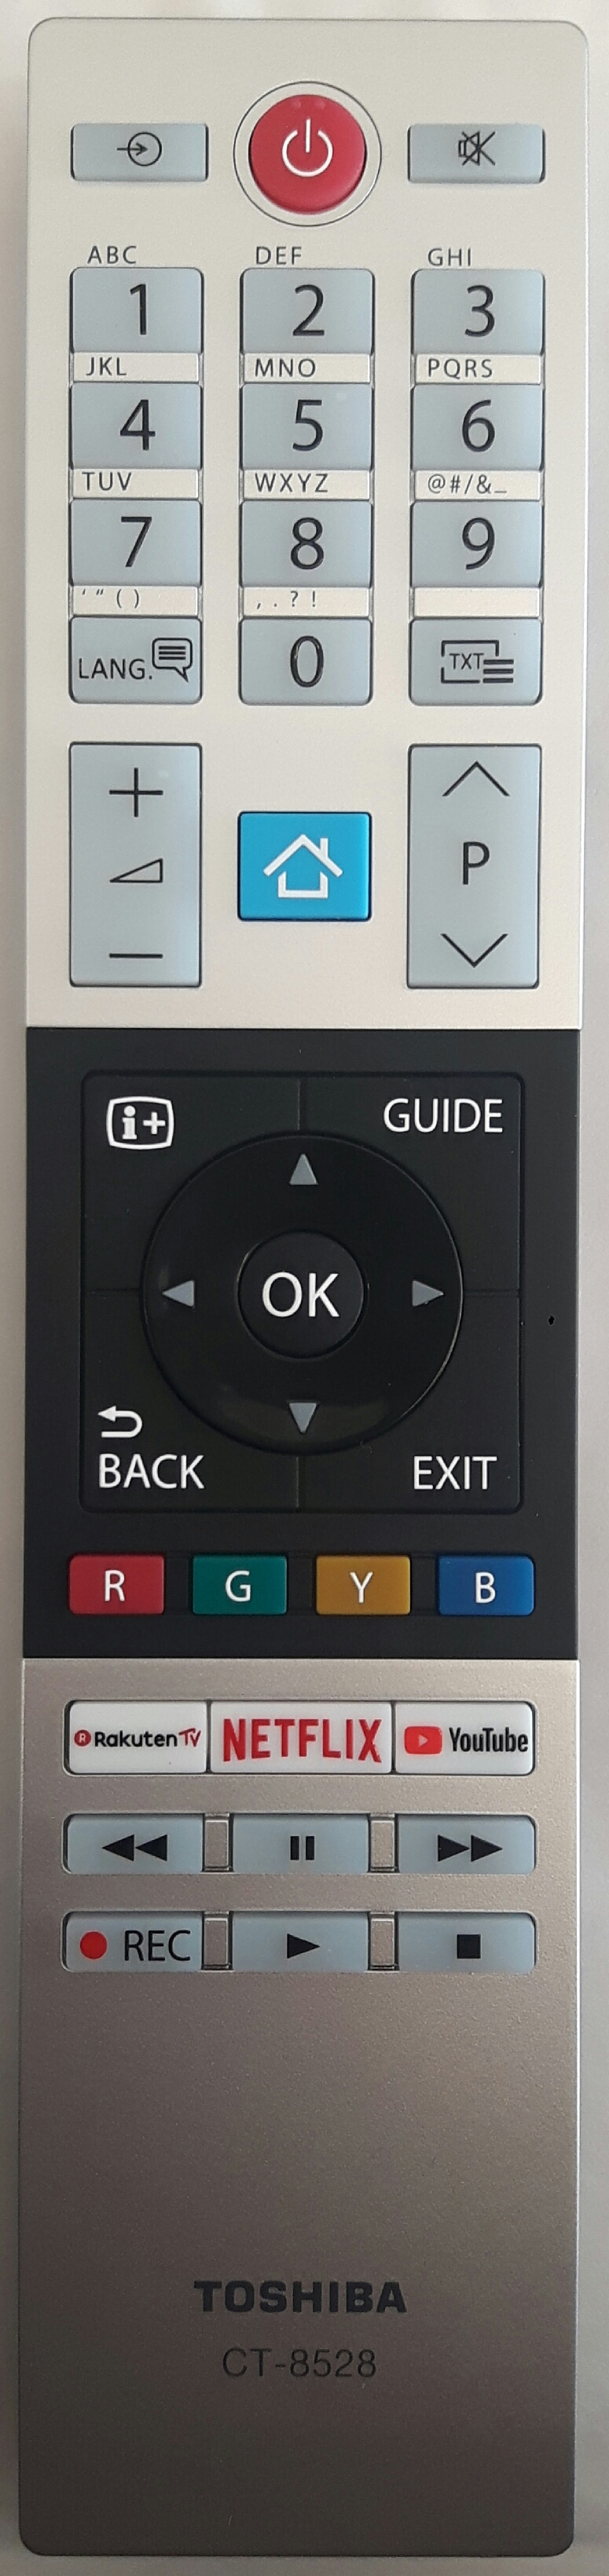 TOSHIBA 10120514 Remote Control Original 